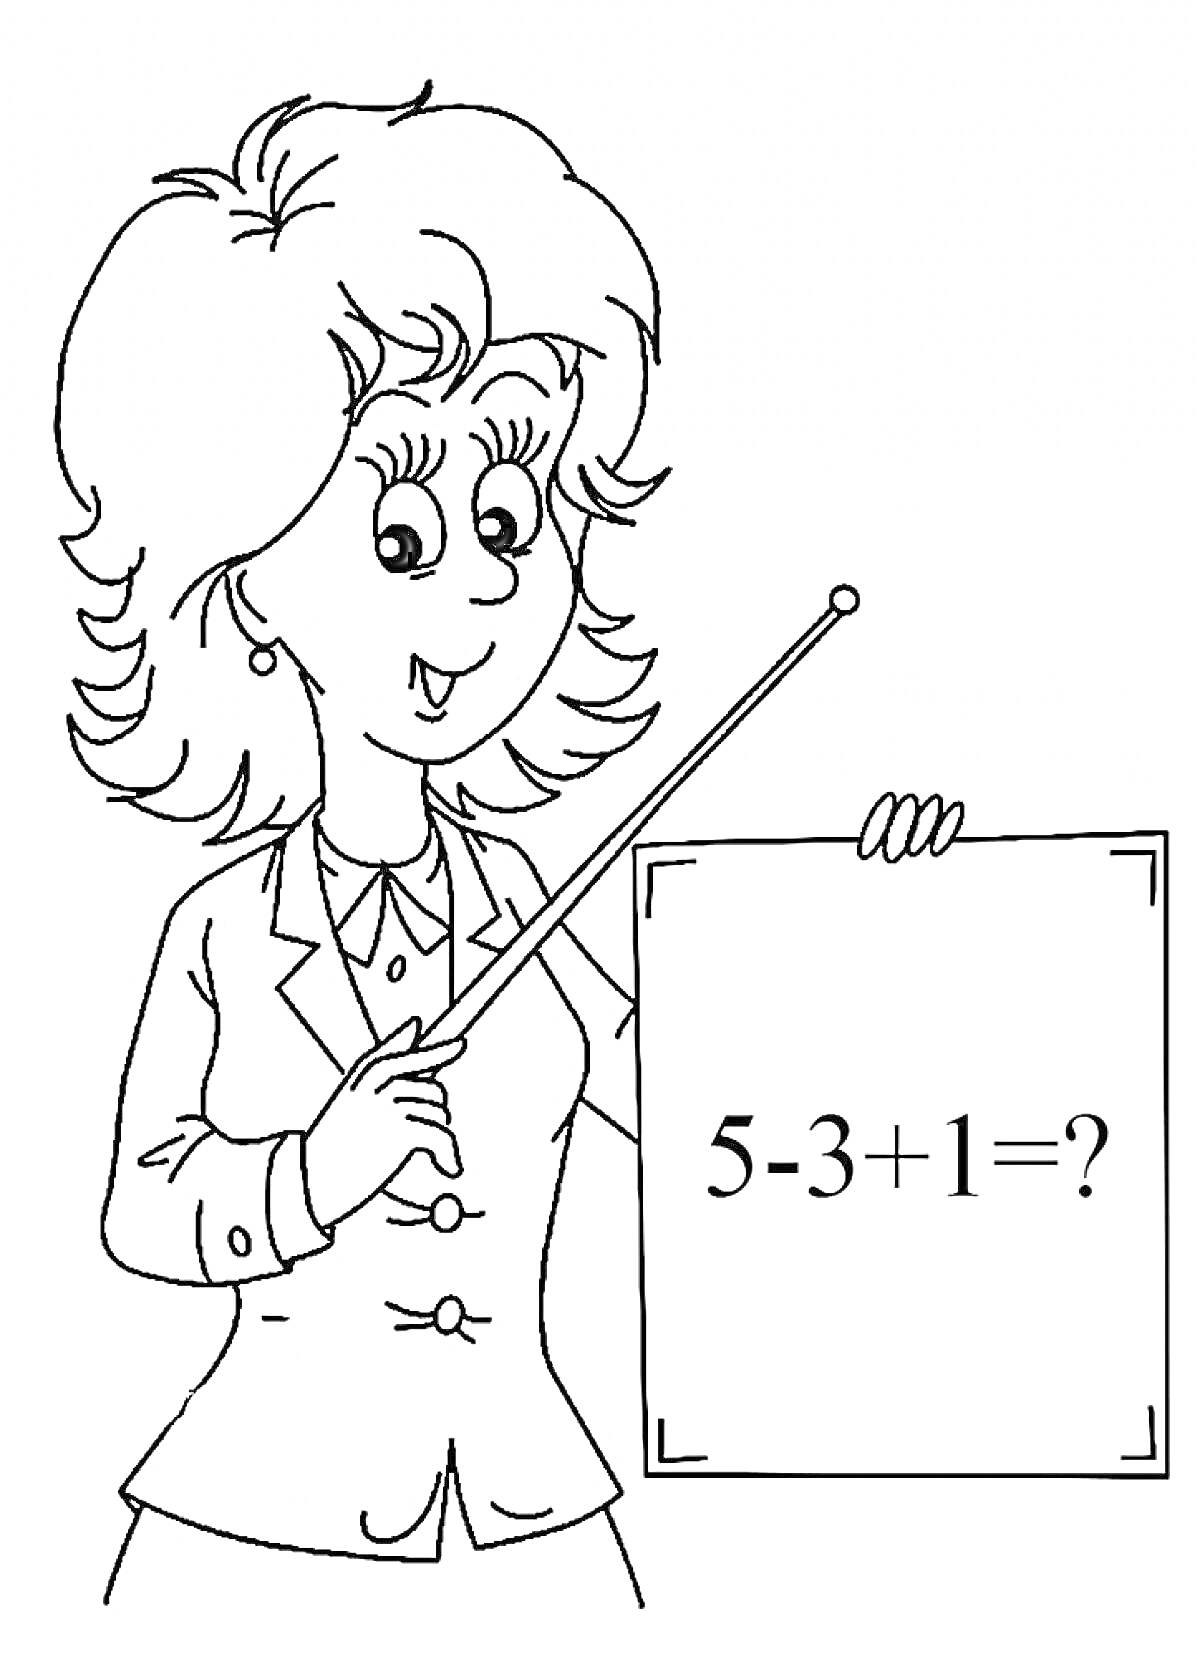 Учитель с указкой показывает математический пример на табличке